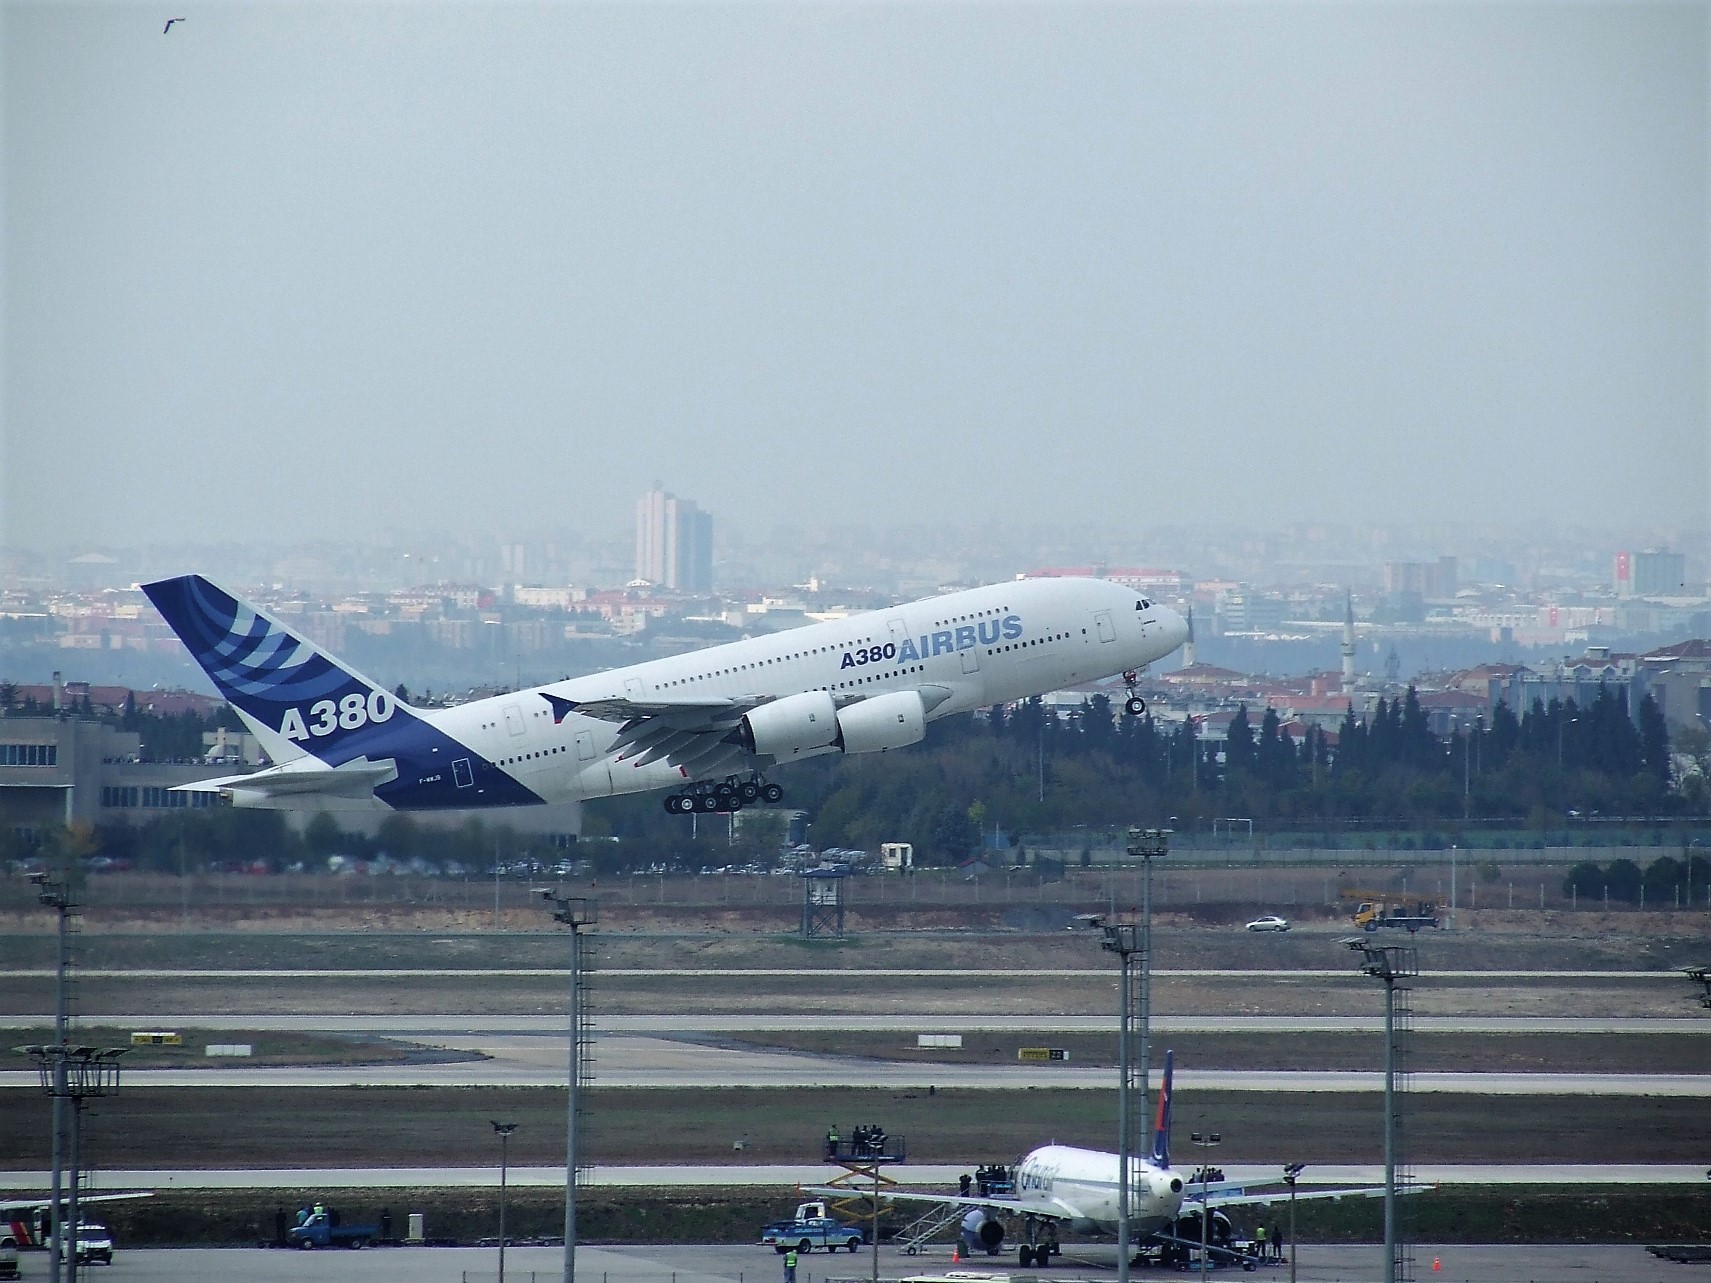 Kiralama Firması Amedeo, Elinde Kalan A380’leri Kendisi İşletecek